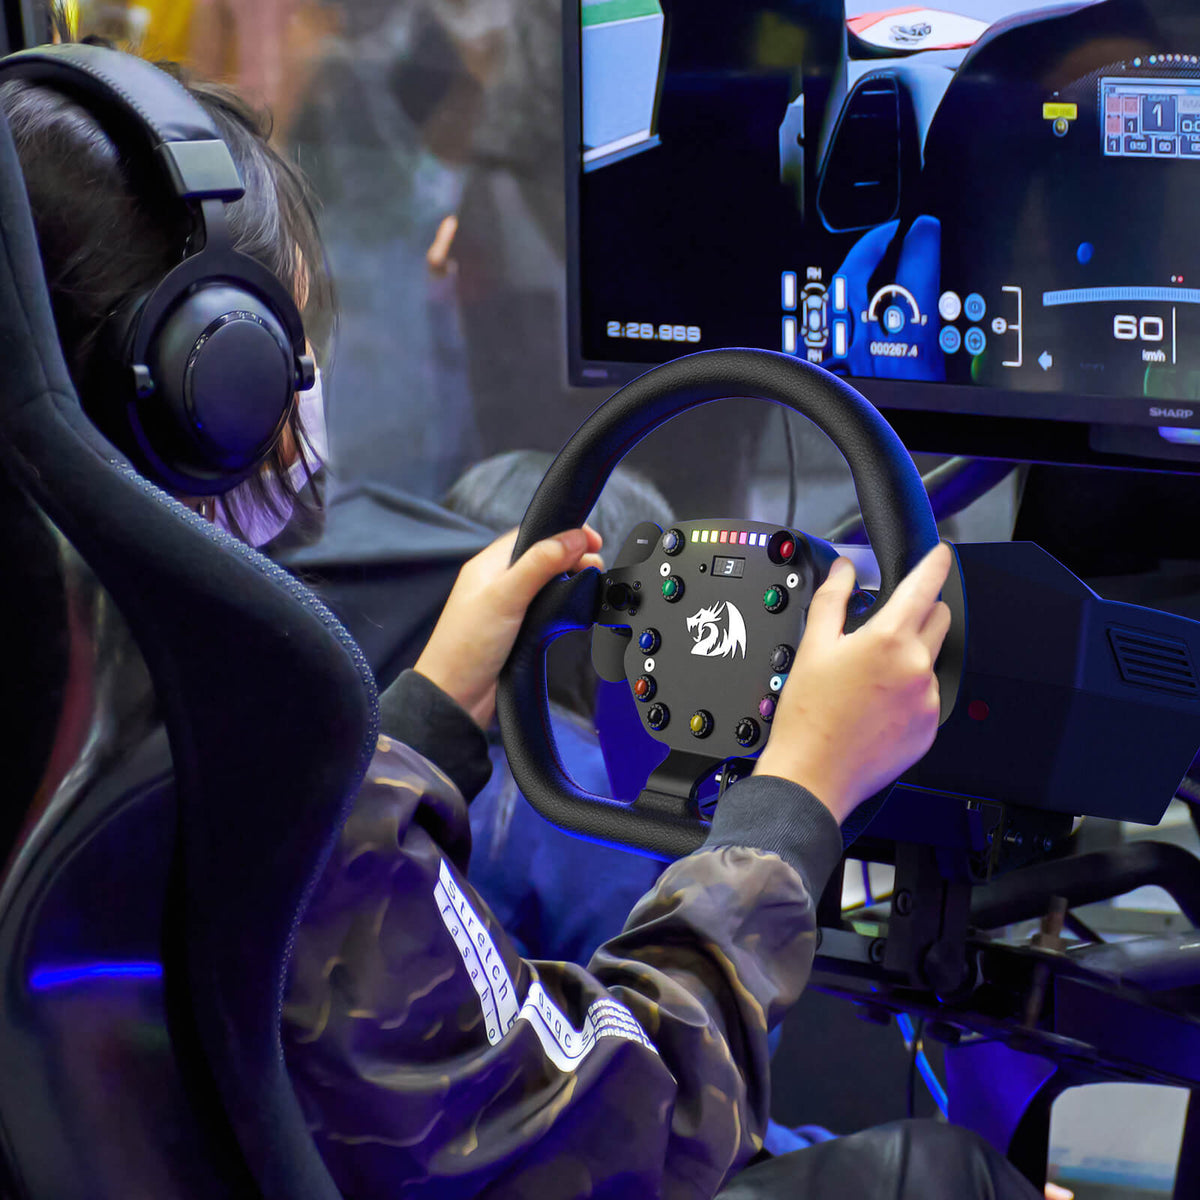 Jual Redragon GT-32 Racing Simulator with Steering & Pedals - Gaming Wheel  - Kota Surabaya - Cahyadistro25